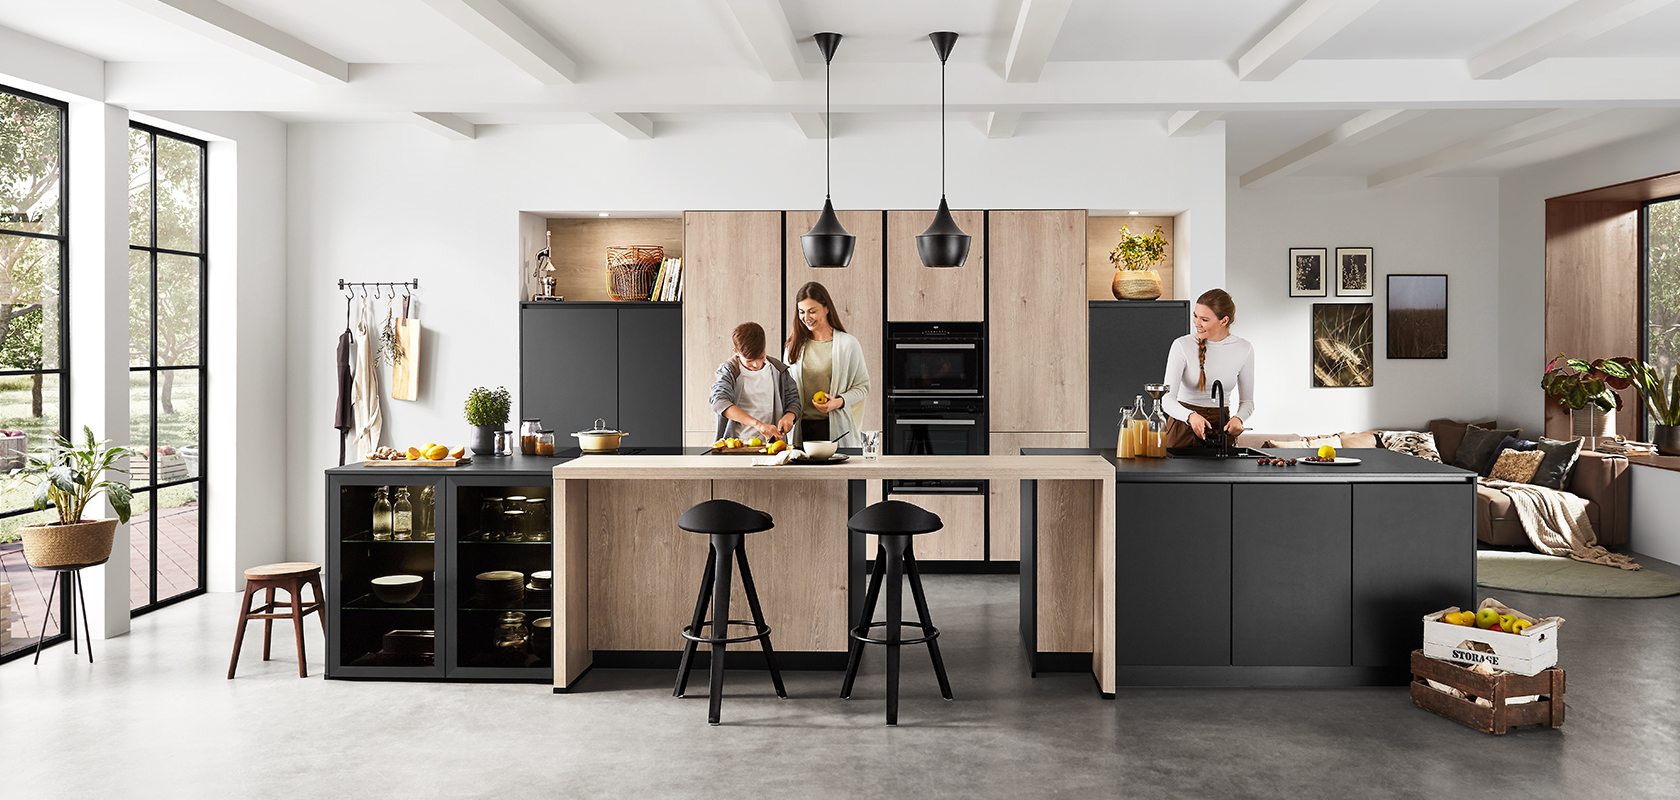 Moderní kuchyňský interiér s prostorným, čistým designem, ve kterém jsou zobrazeni dva lidé vařící a povídající si, zdůrazňující funkčnost a současný styl.